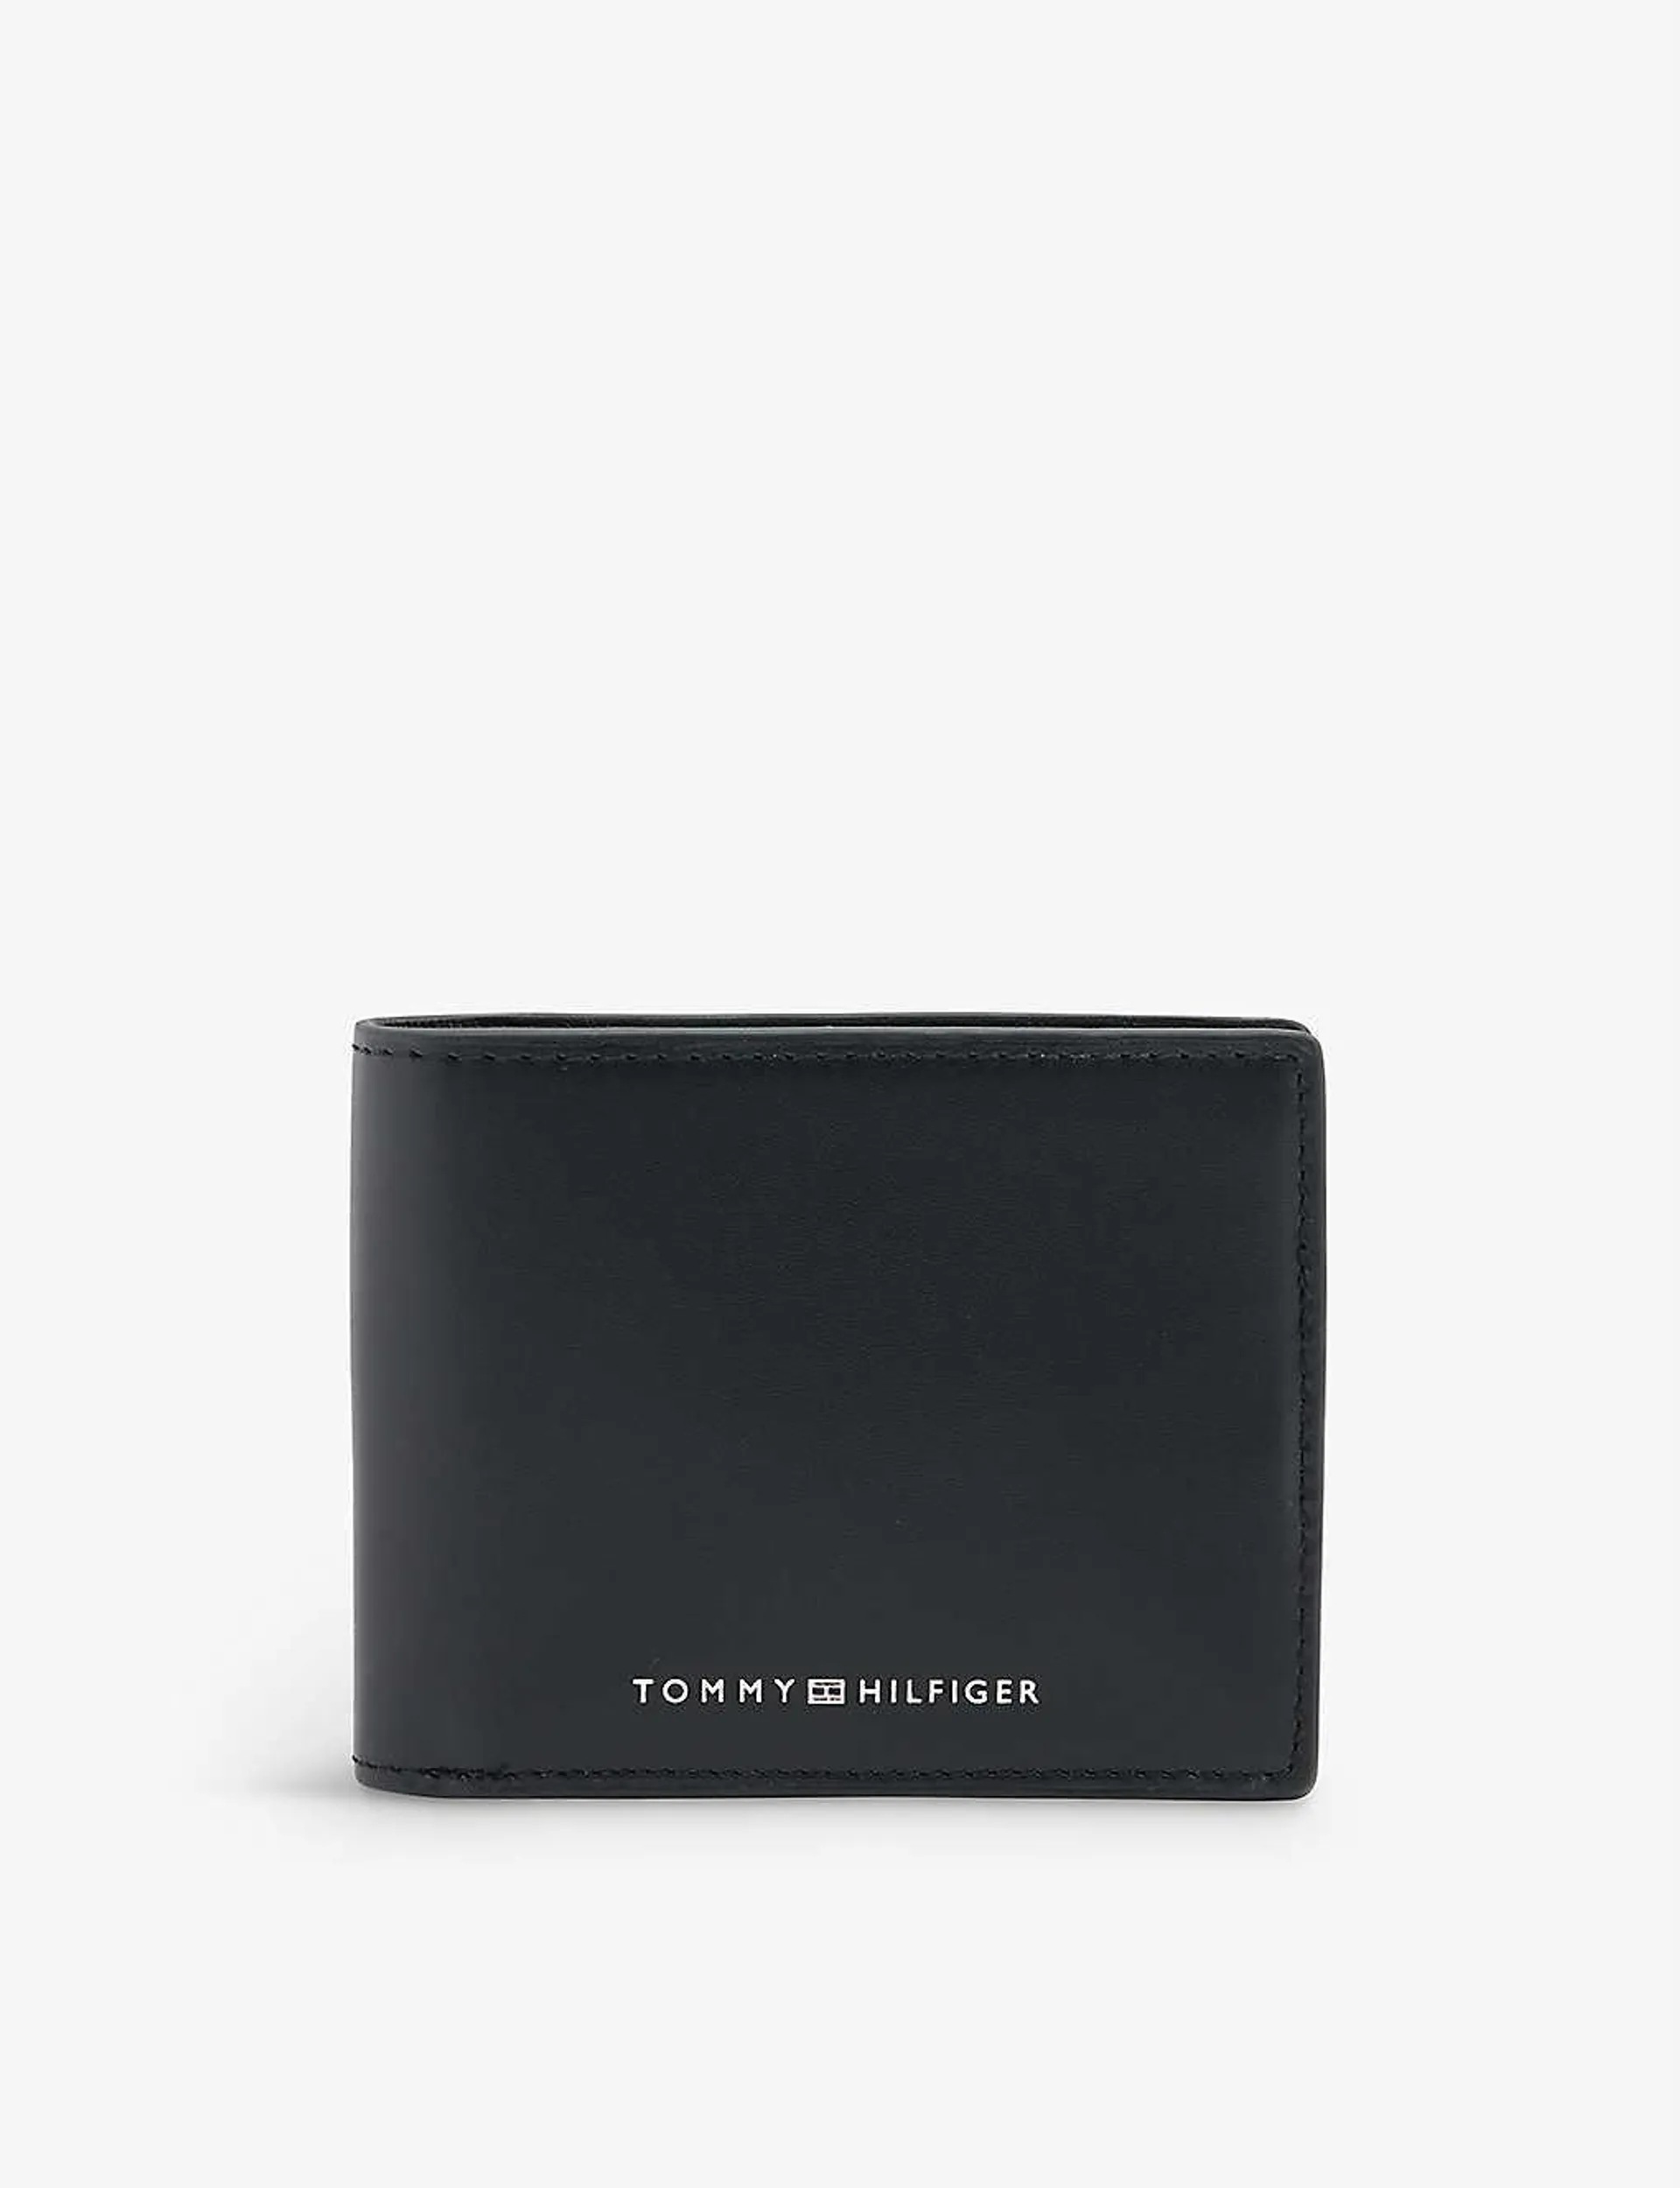 Modern monogrammed leather card holder